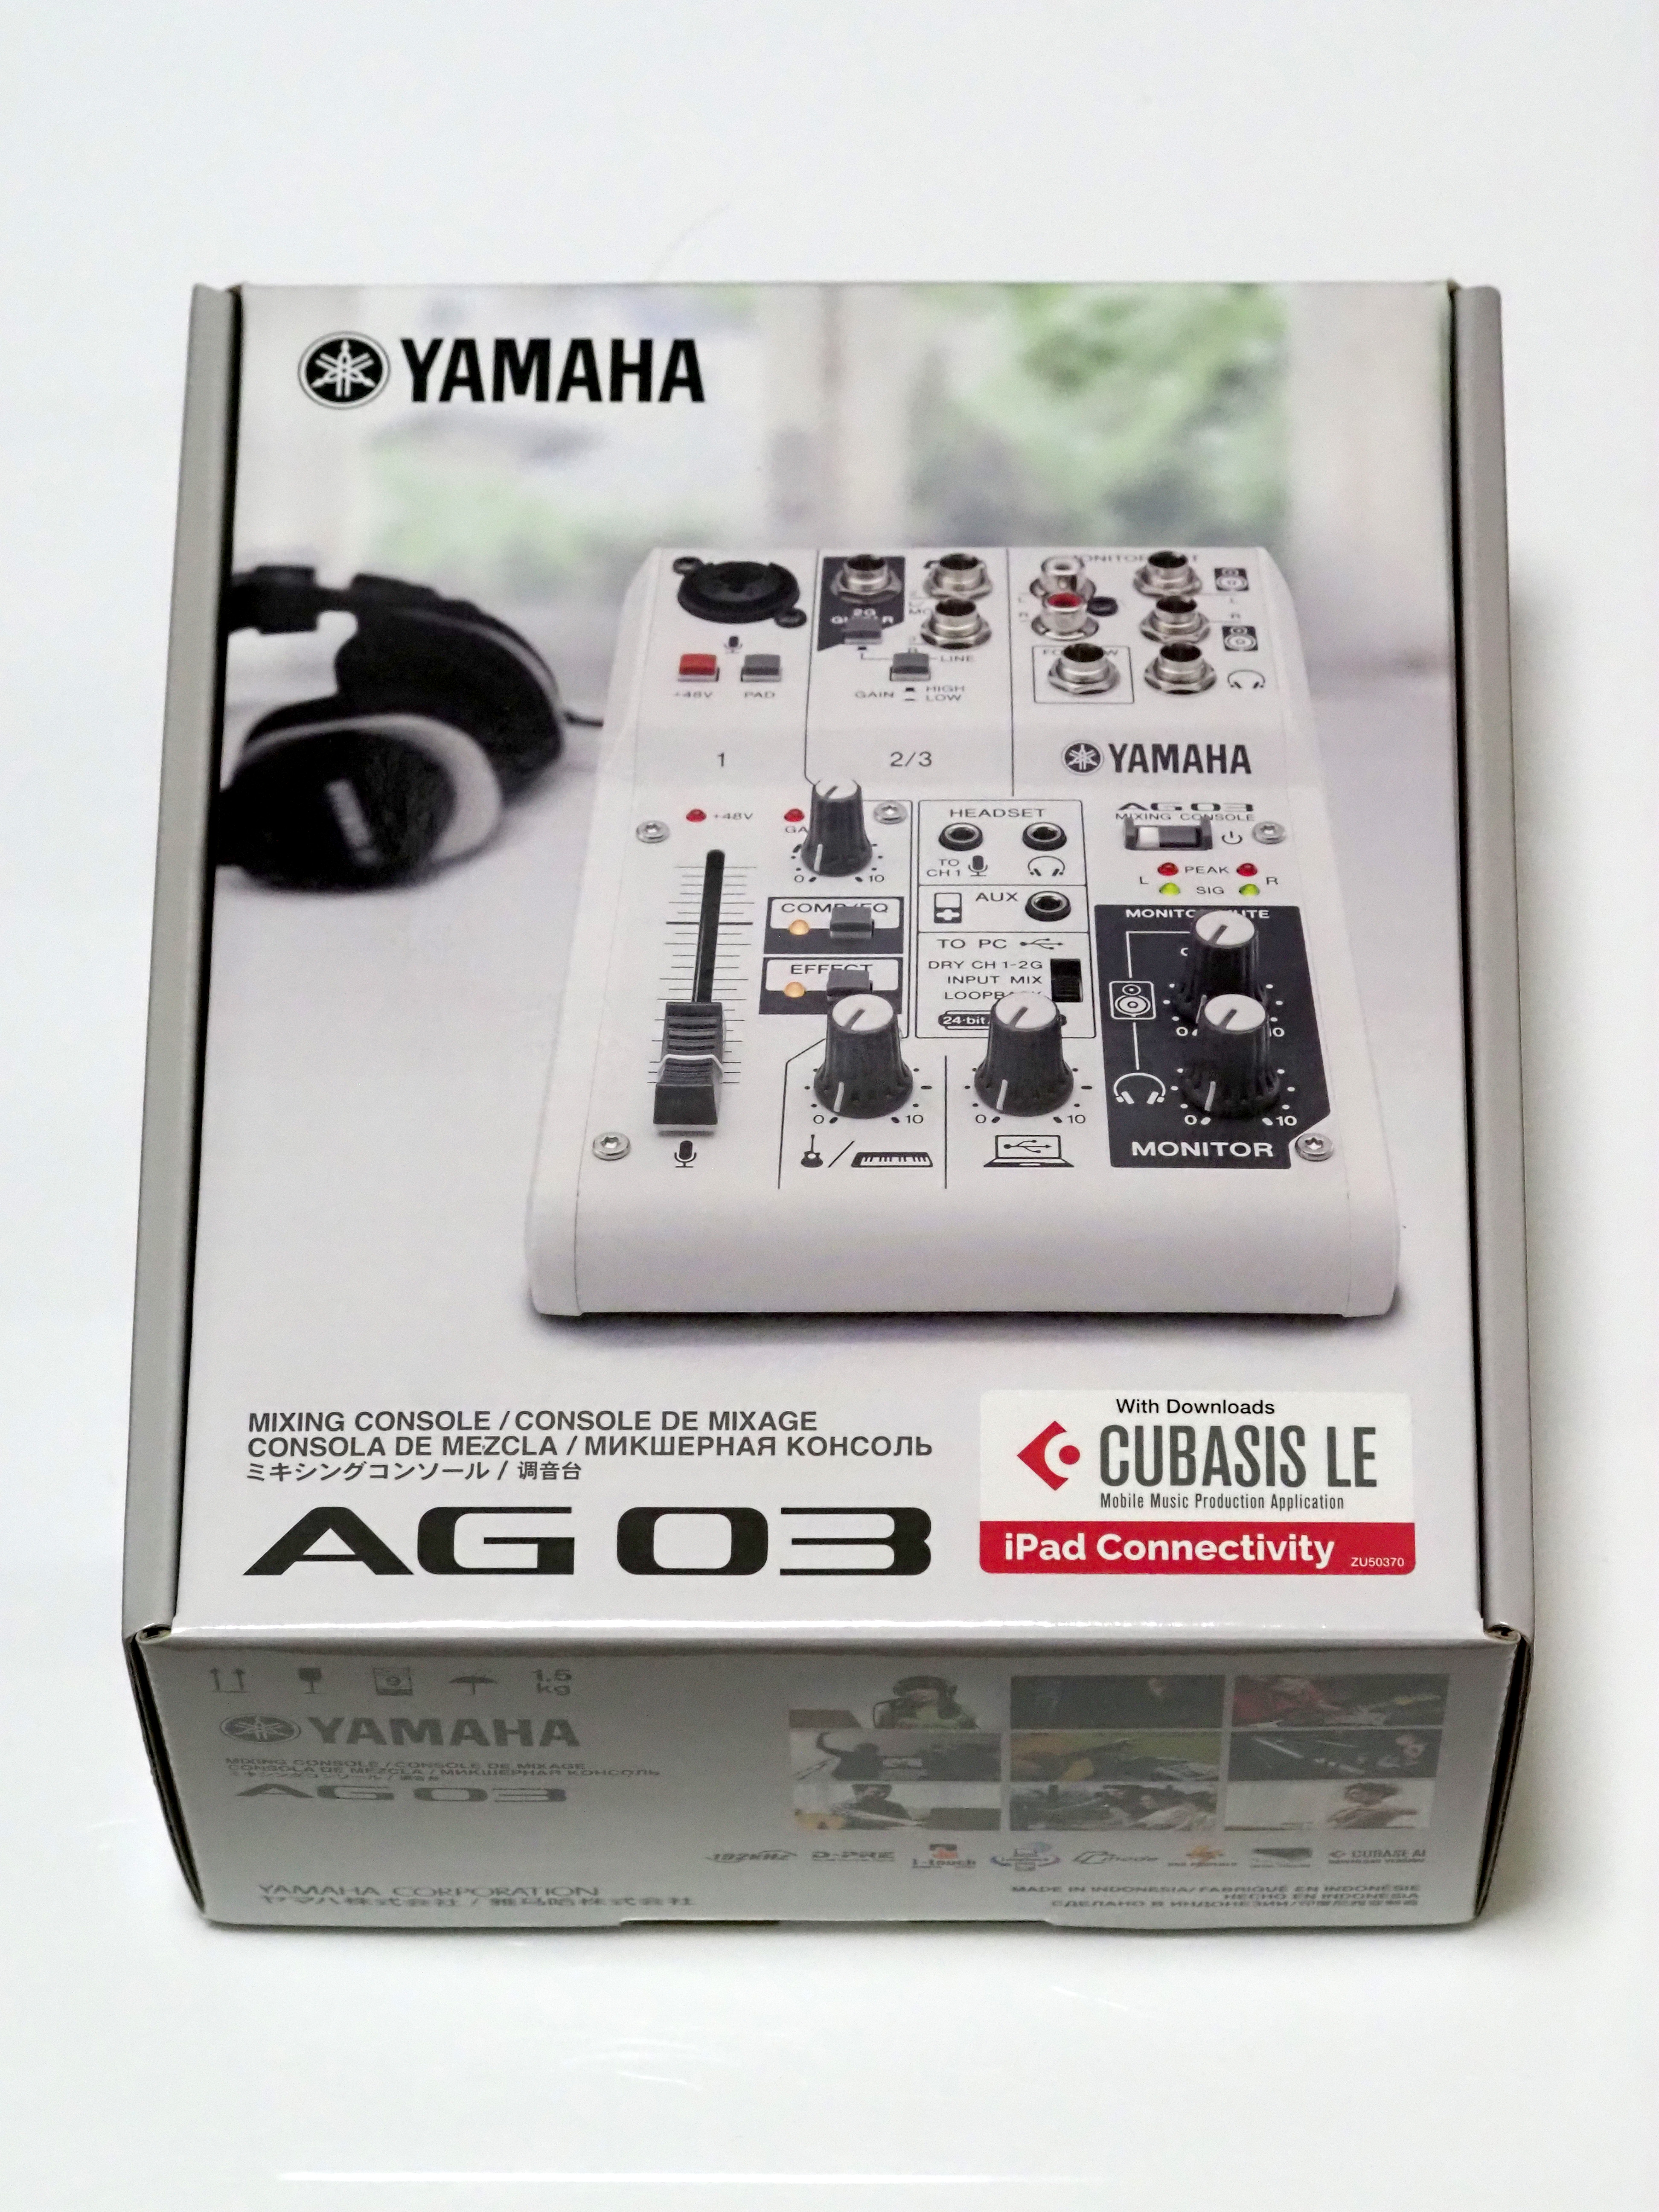 Yamaha ウェブキャスティングミキサー Ag03 のレビュー